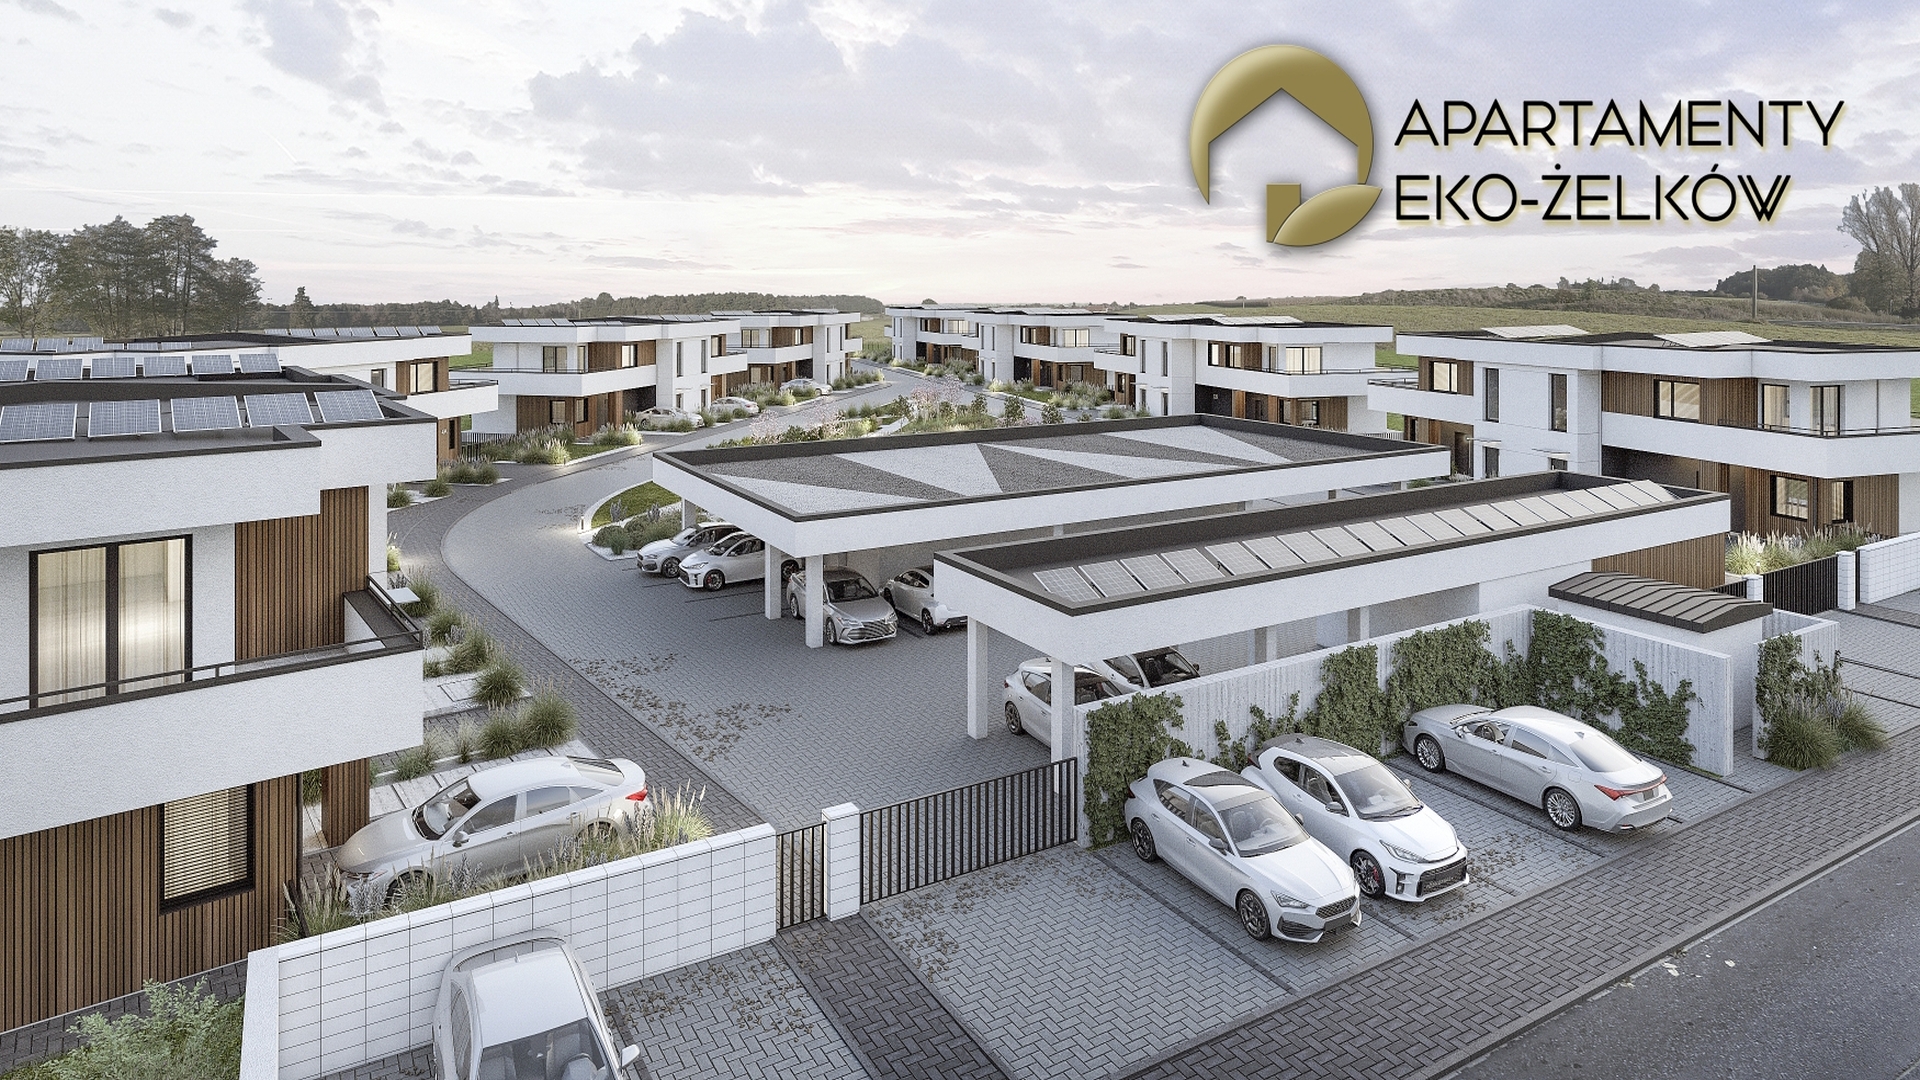 Apartamenty Eko-Zelkow